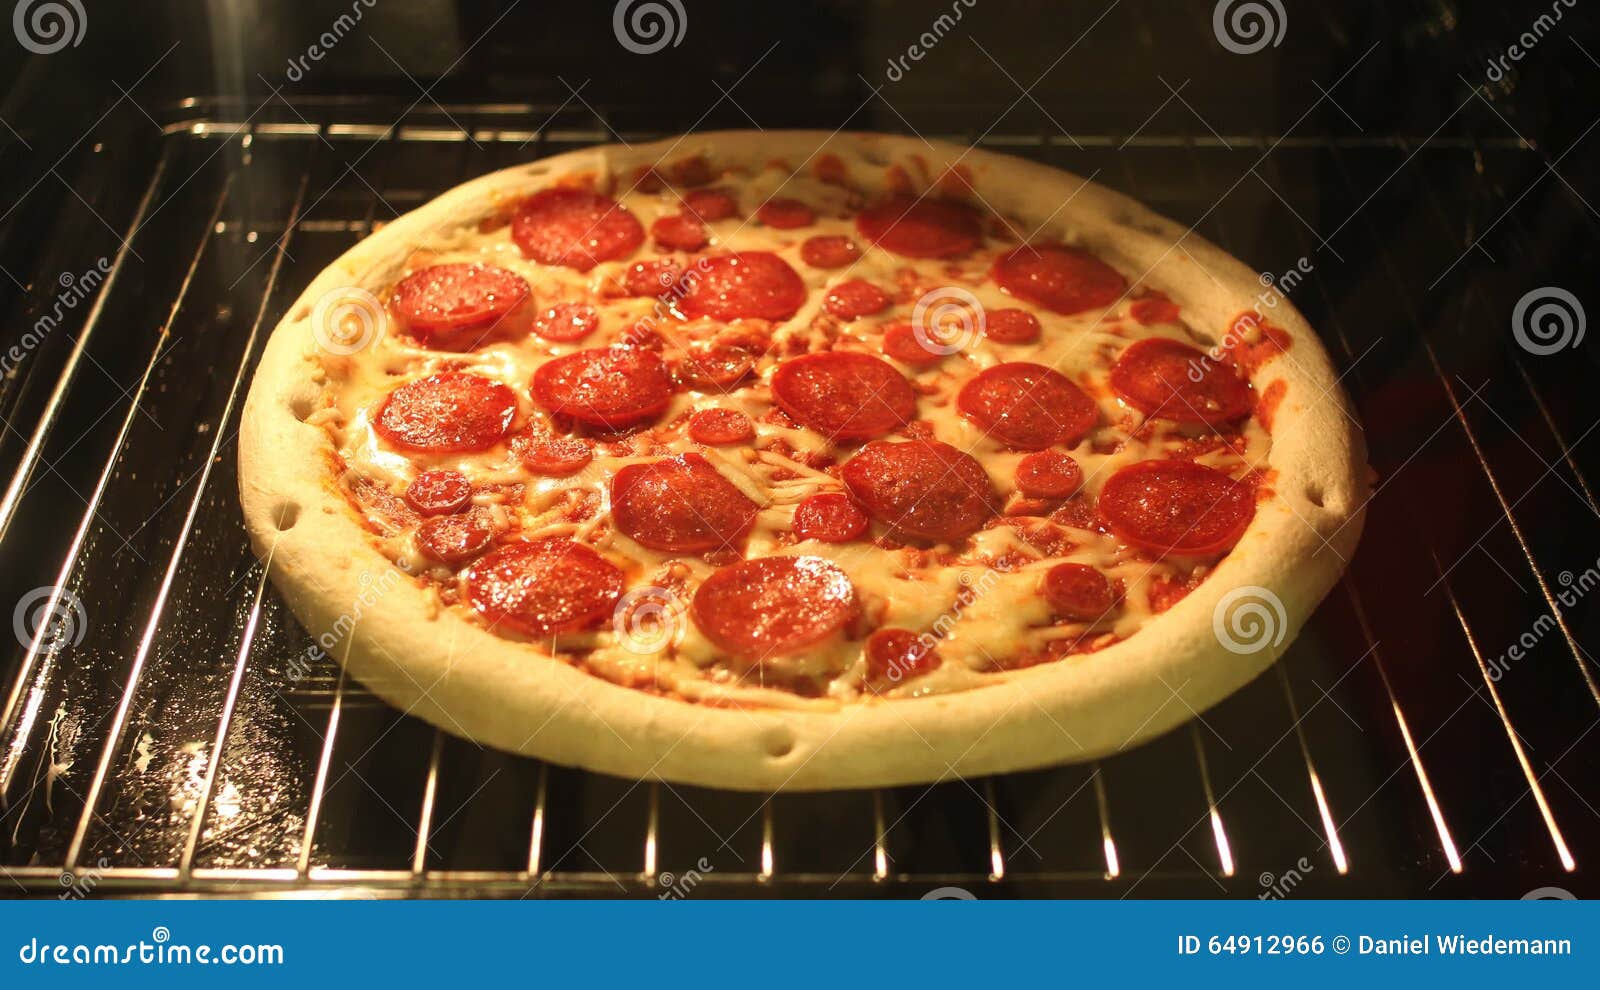 можно печь пиццу на фольге в духовке ли фото 75